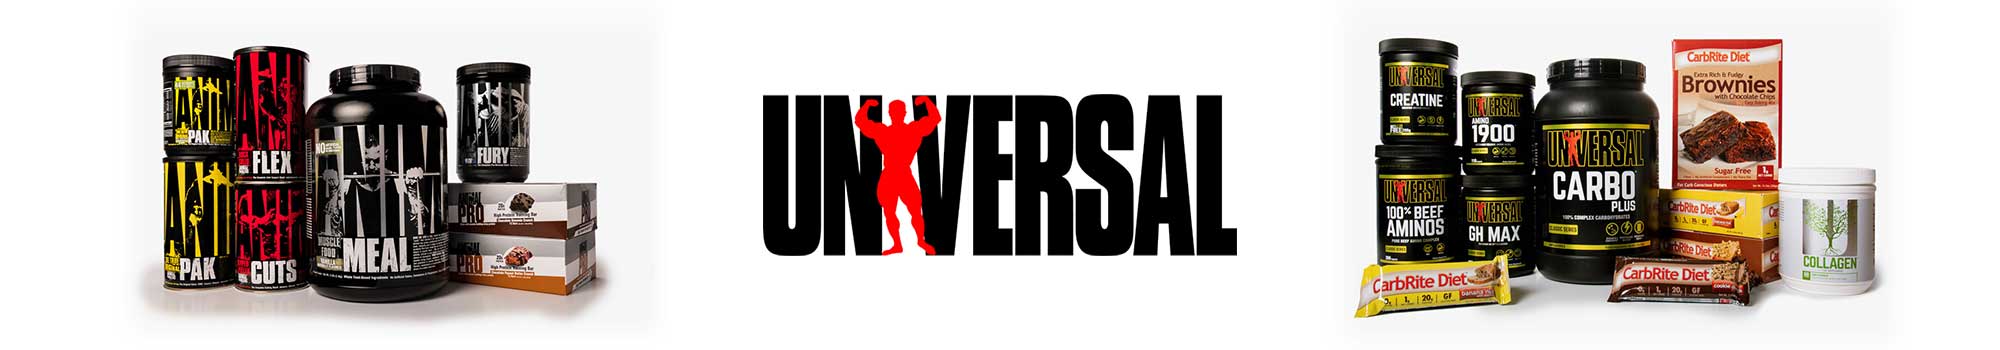 universal-banner.jpg (65 KB)